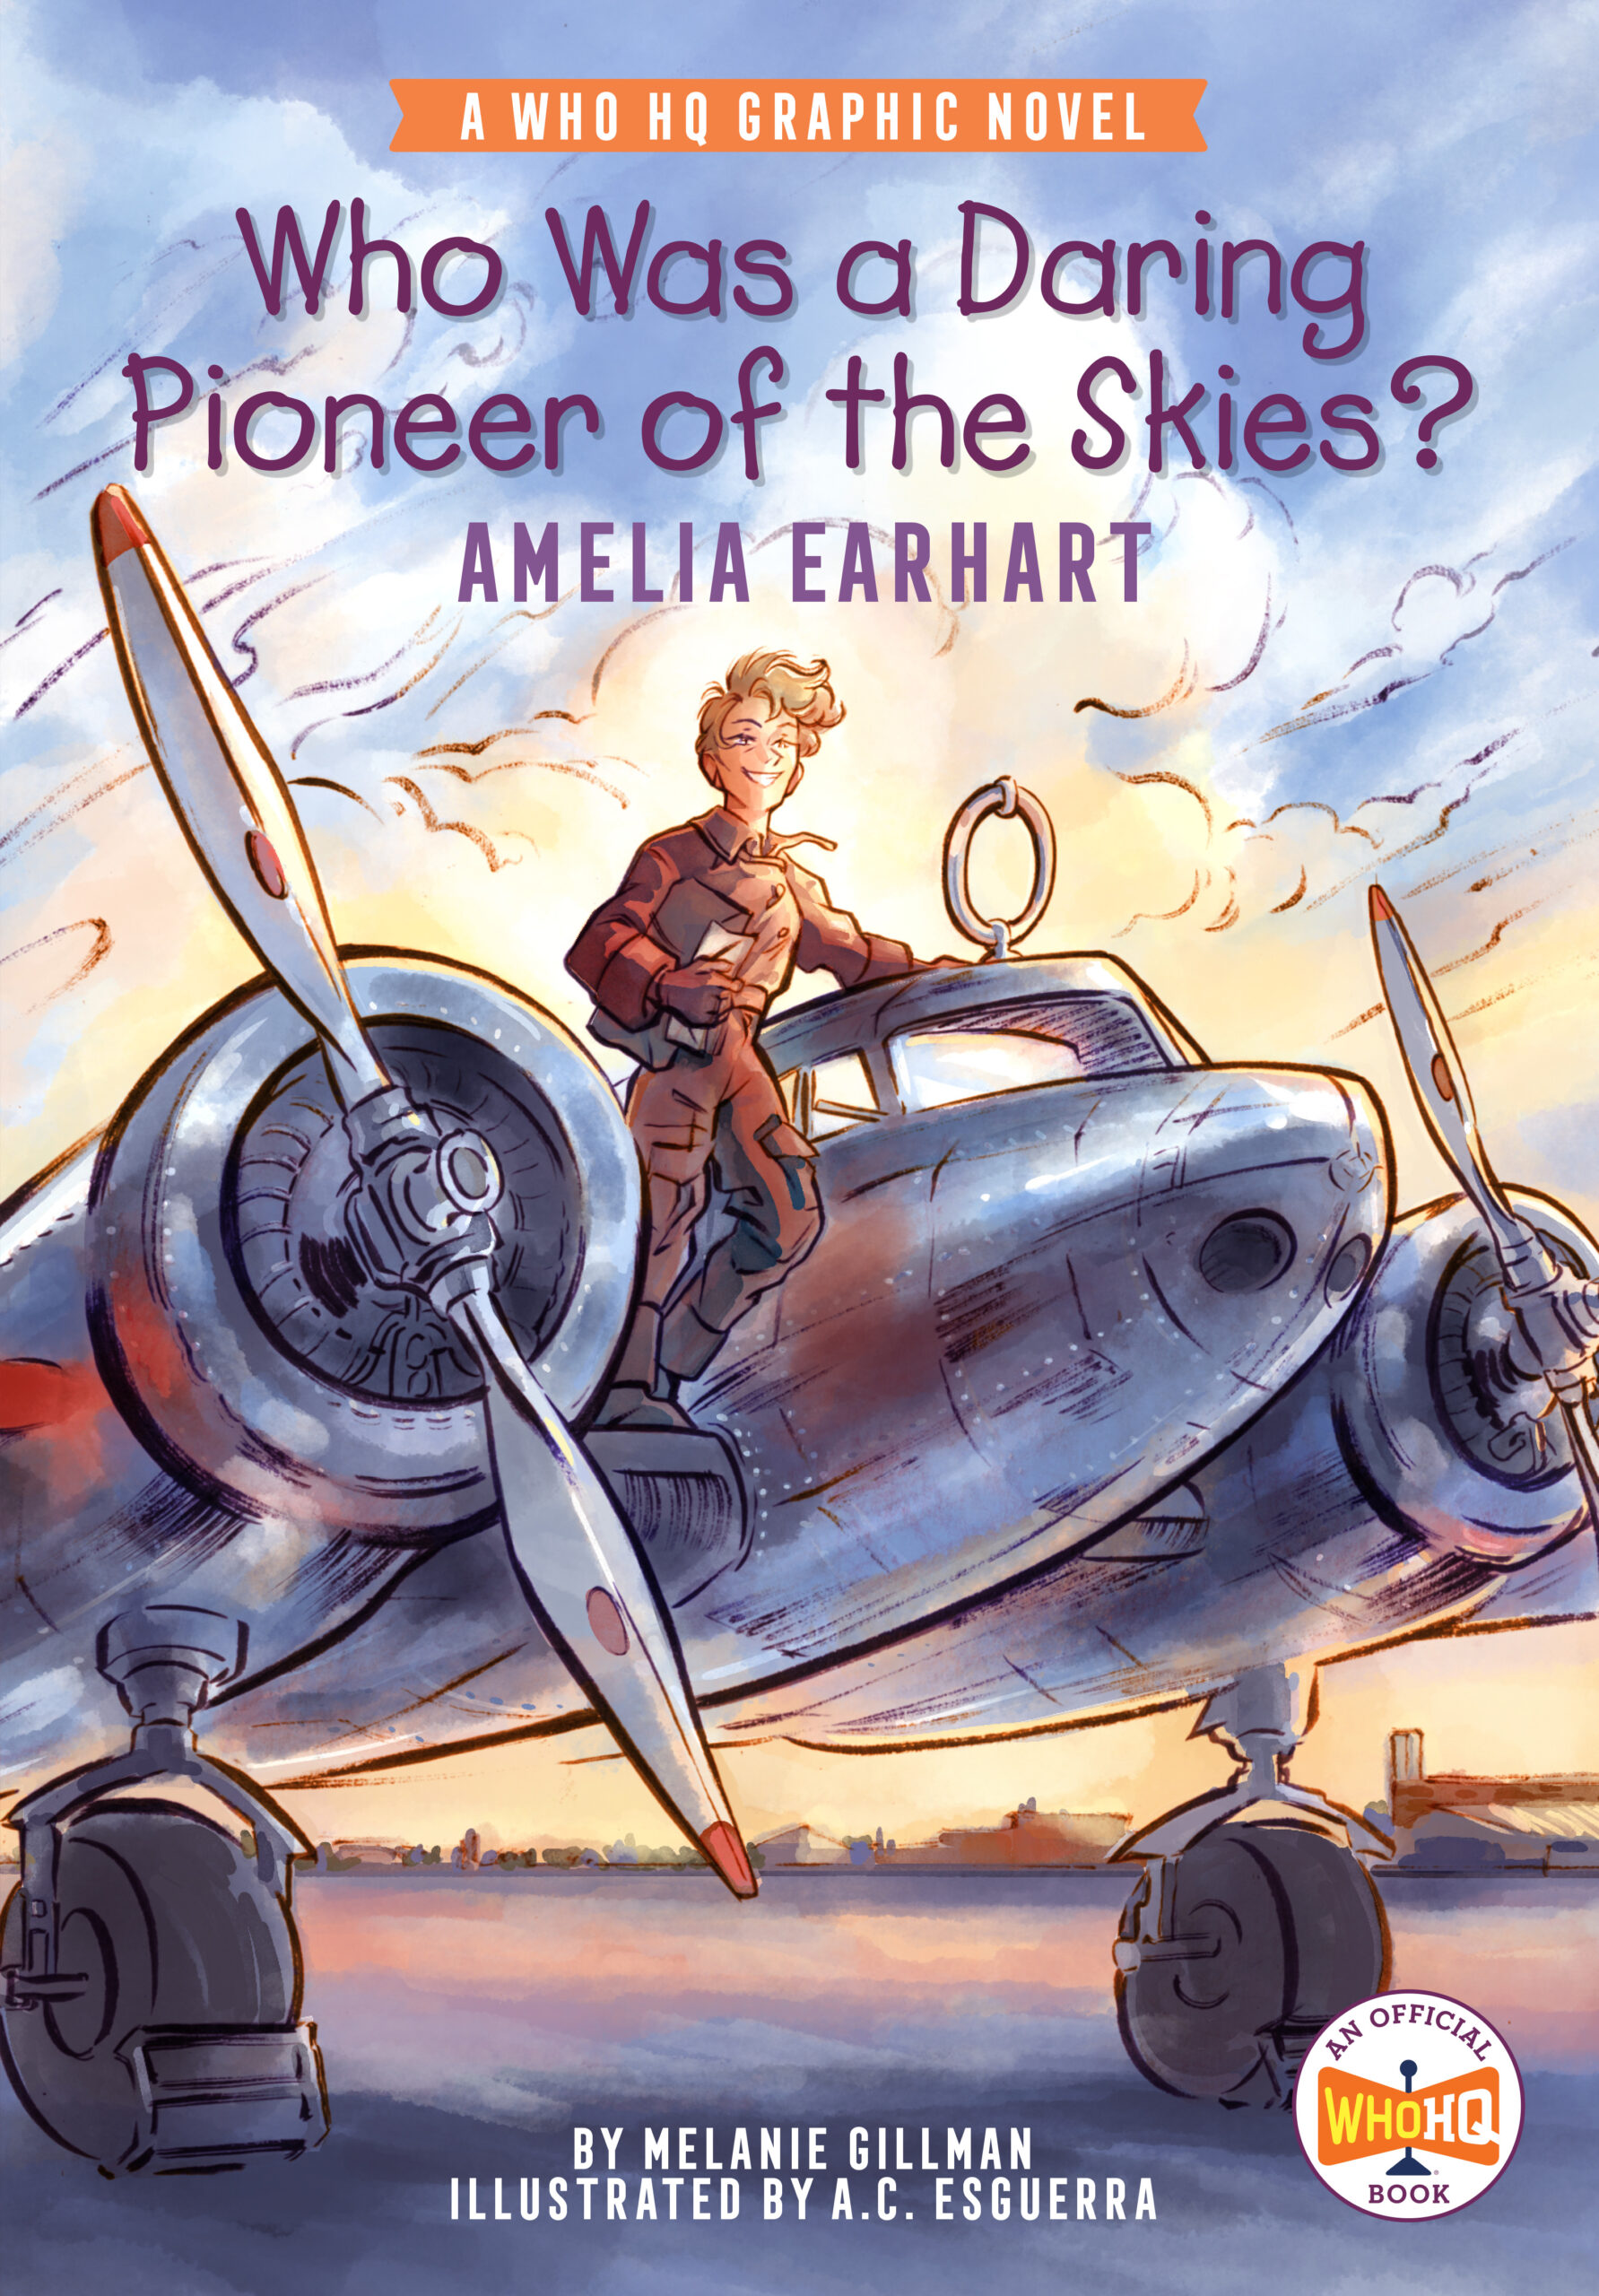 Aviator Amelia Earhart Fantastic Poster 